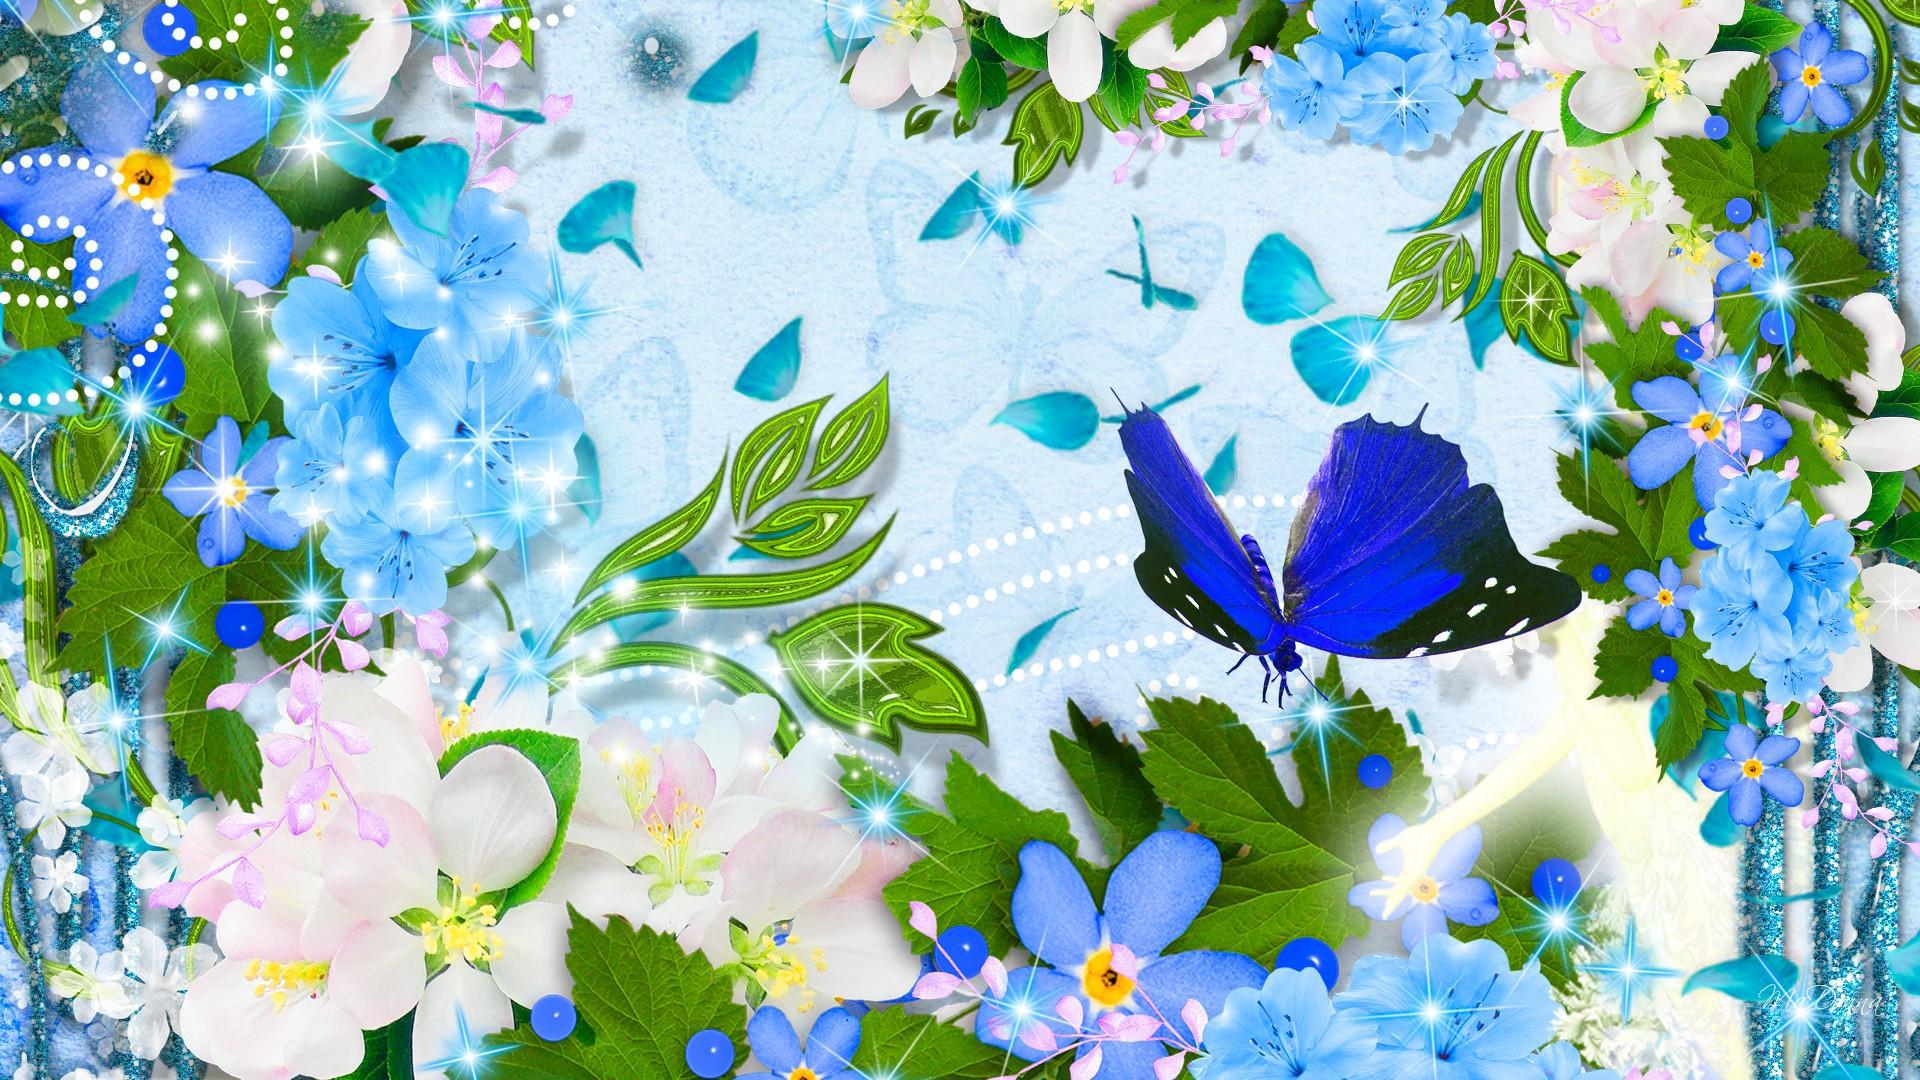 Bunga Kupu-kupu Biru - New Blue Flower And Butterfly , HD Wallpaper & Backgrounds